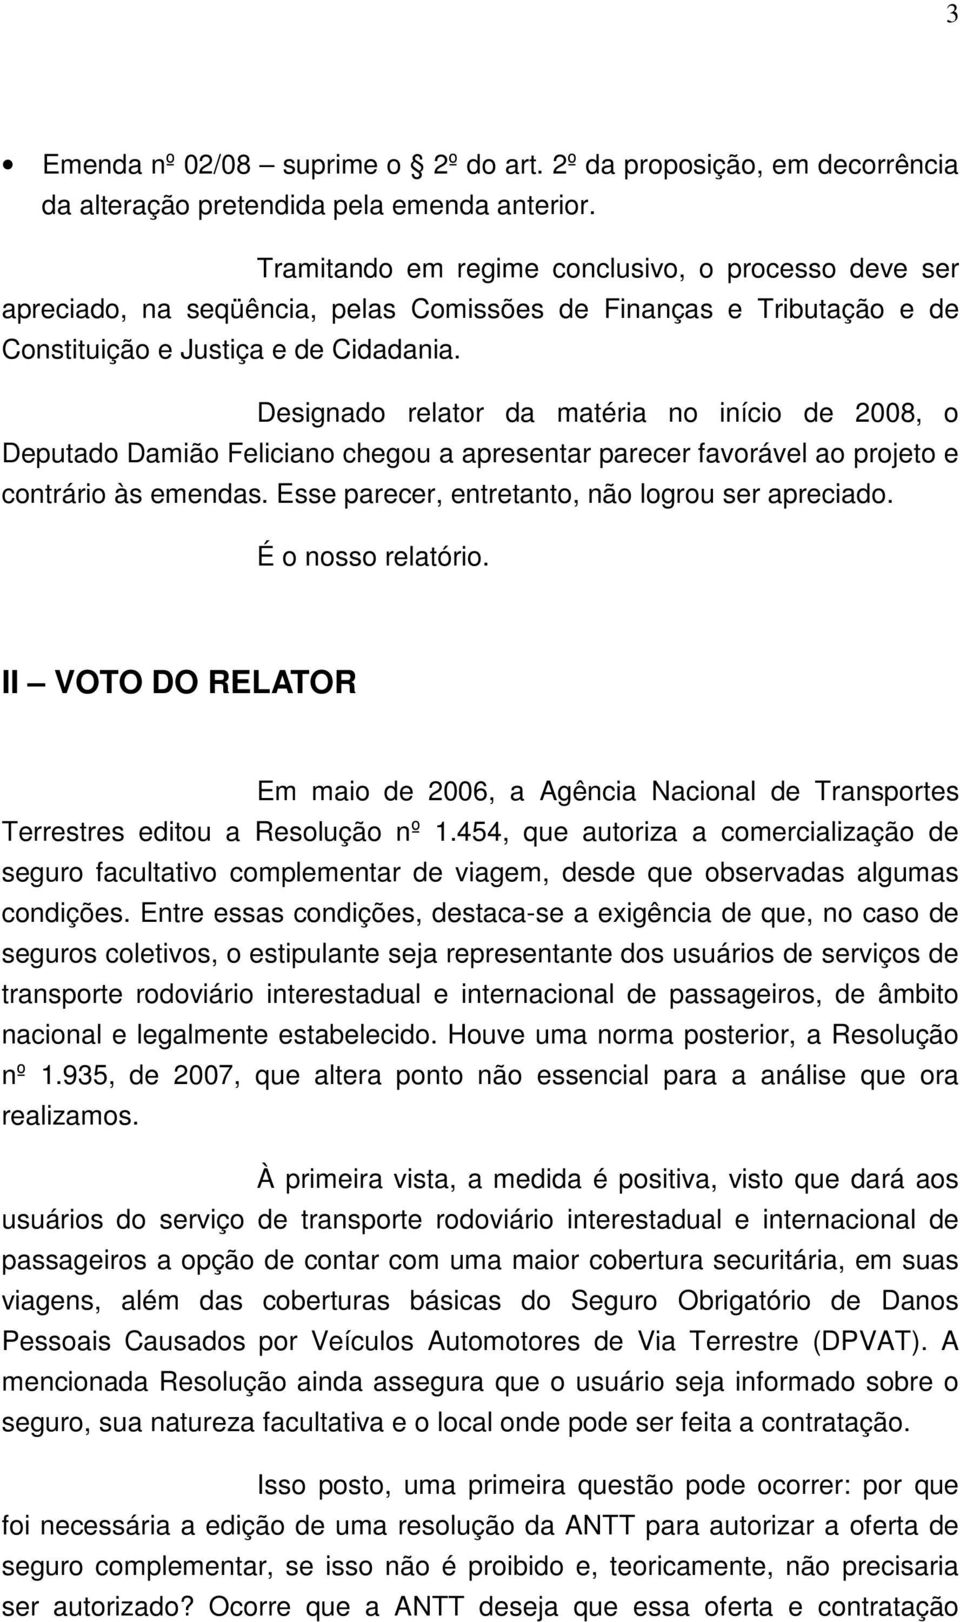 Designado relator da matéria no início de 2008, o Deputado Damião Feliciano chegou a apresentar parecer favorável ao projeto e contrário às emendas. Esse parecer, entretanto, não logrou ser apreciado.